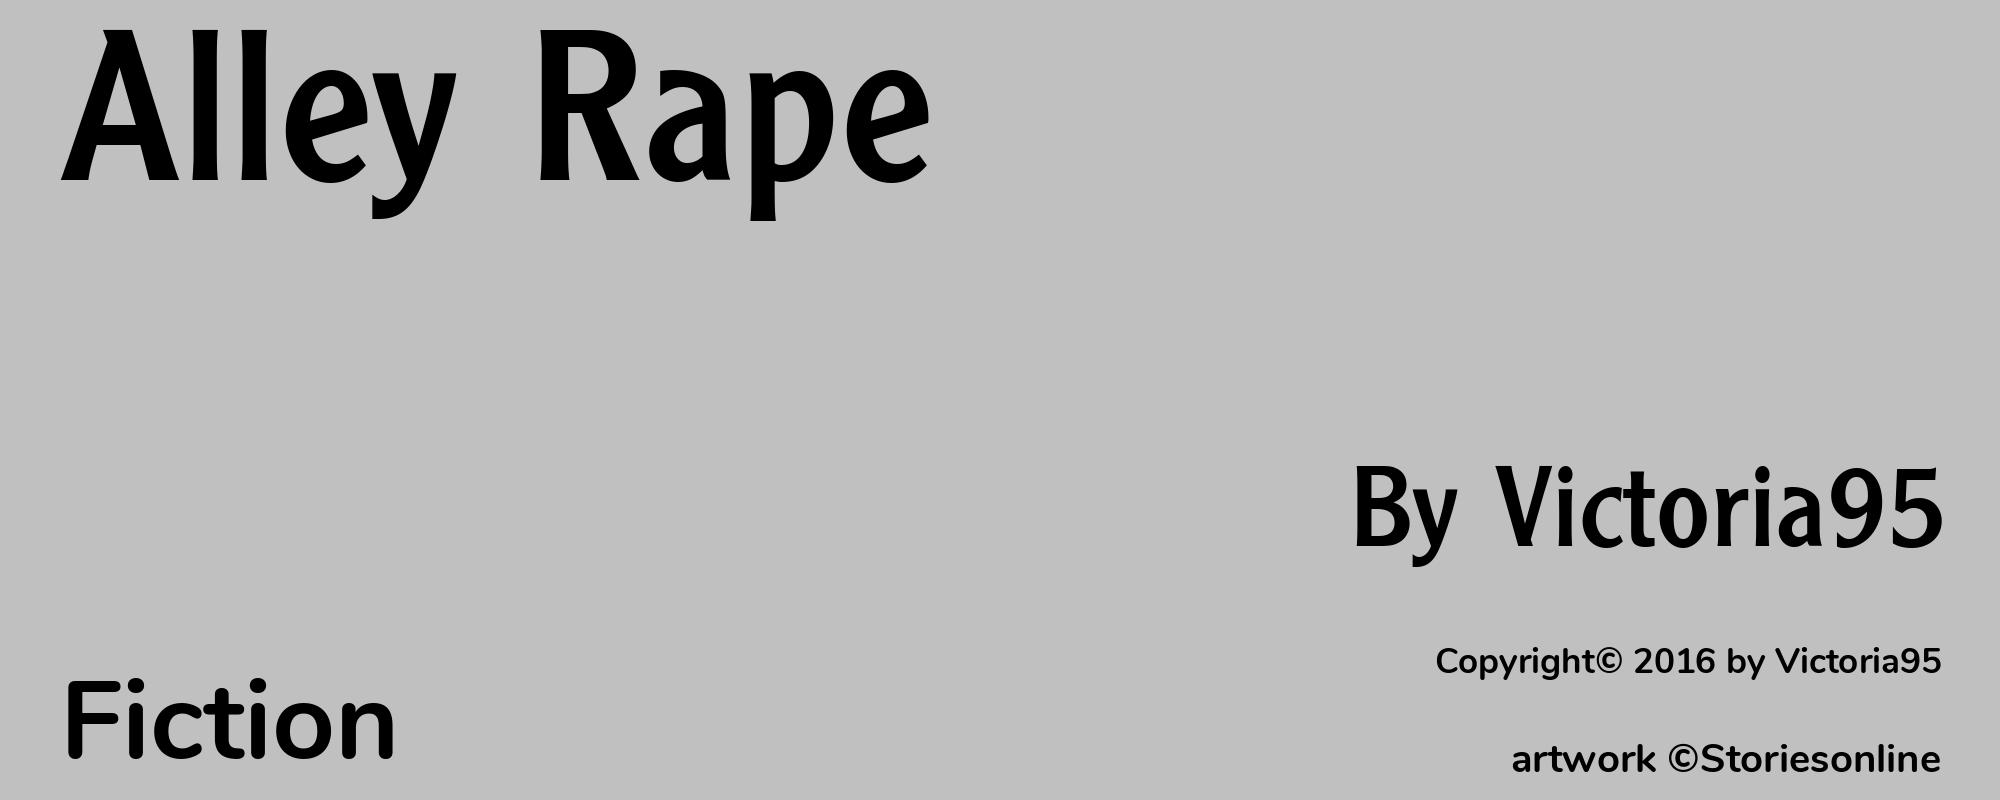 Alley Rape - Cover